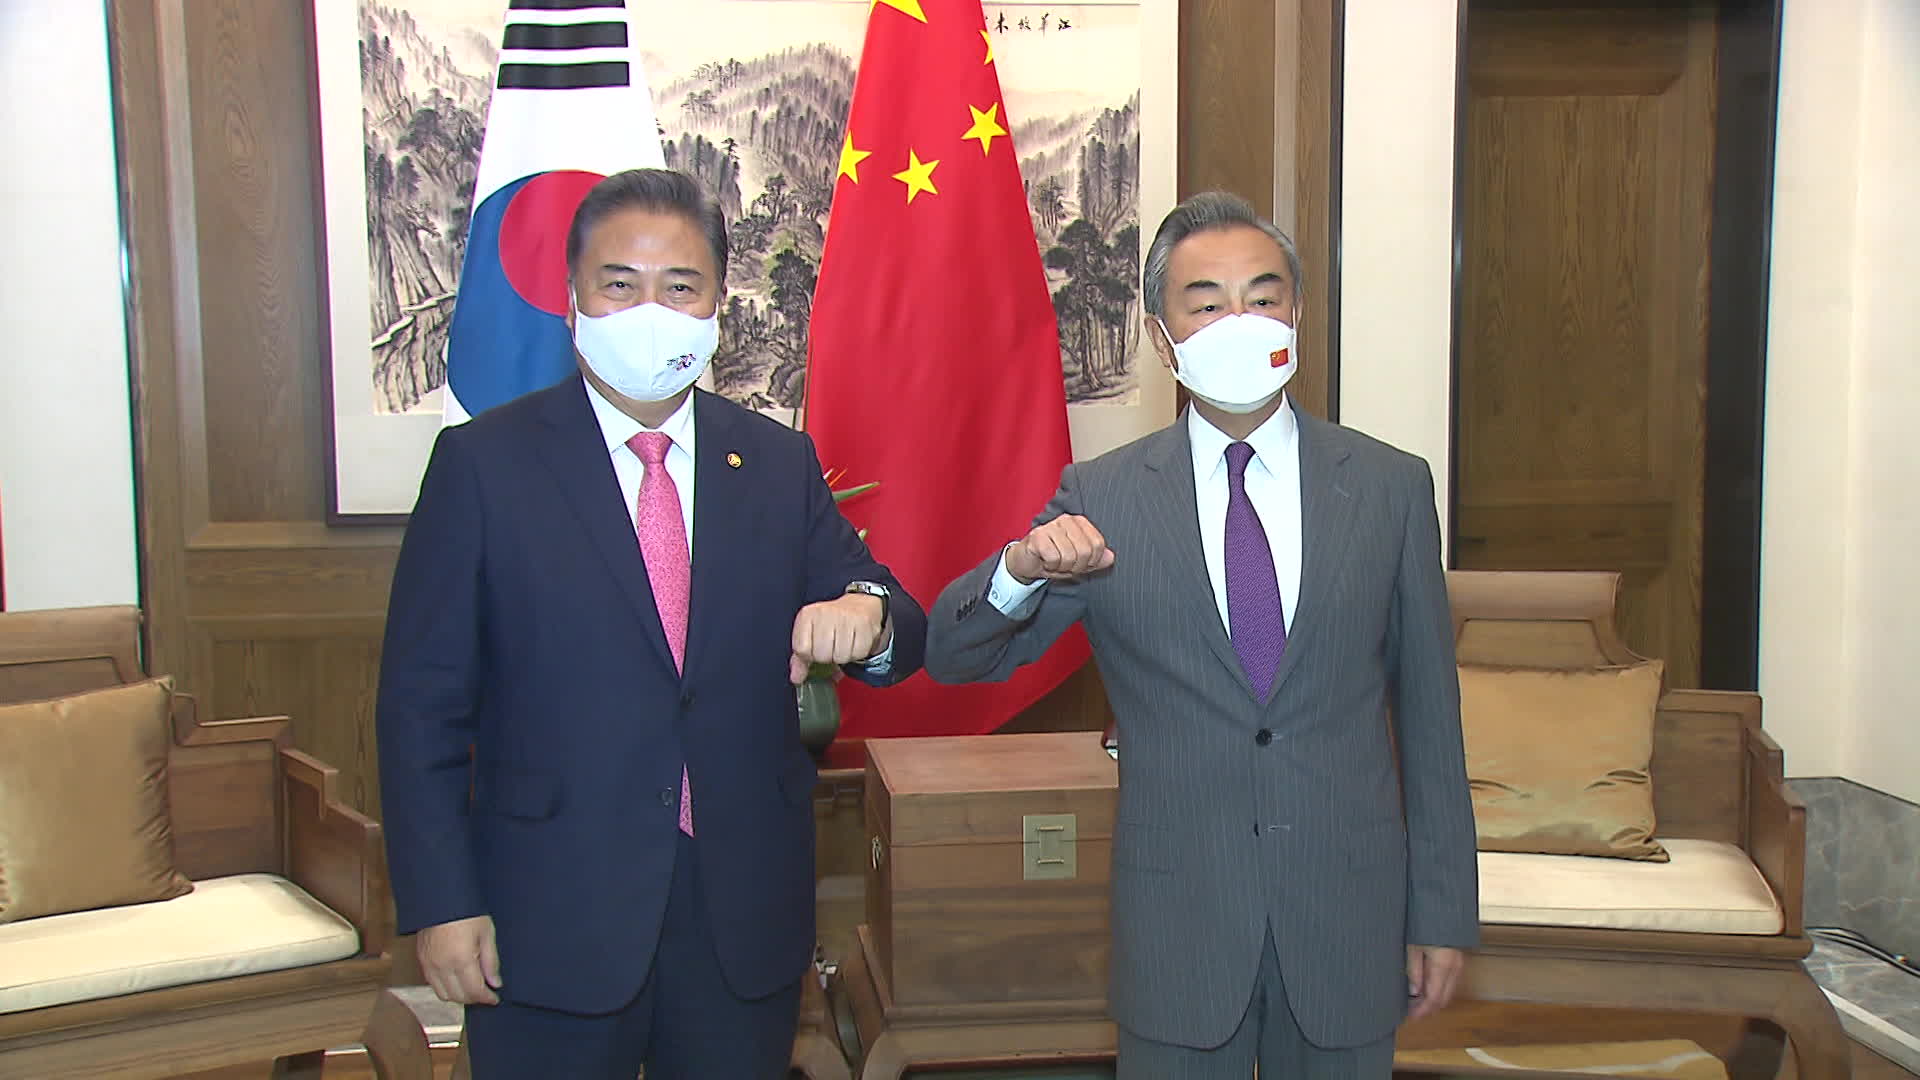 박진 외교장관(왼쪽)은 왕이 중국 외교부장(오른쪽)과의 회담에서 사드 3불은 합의도 약속도 아니라고 거듭 밝혔다.